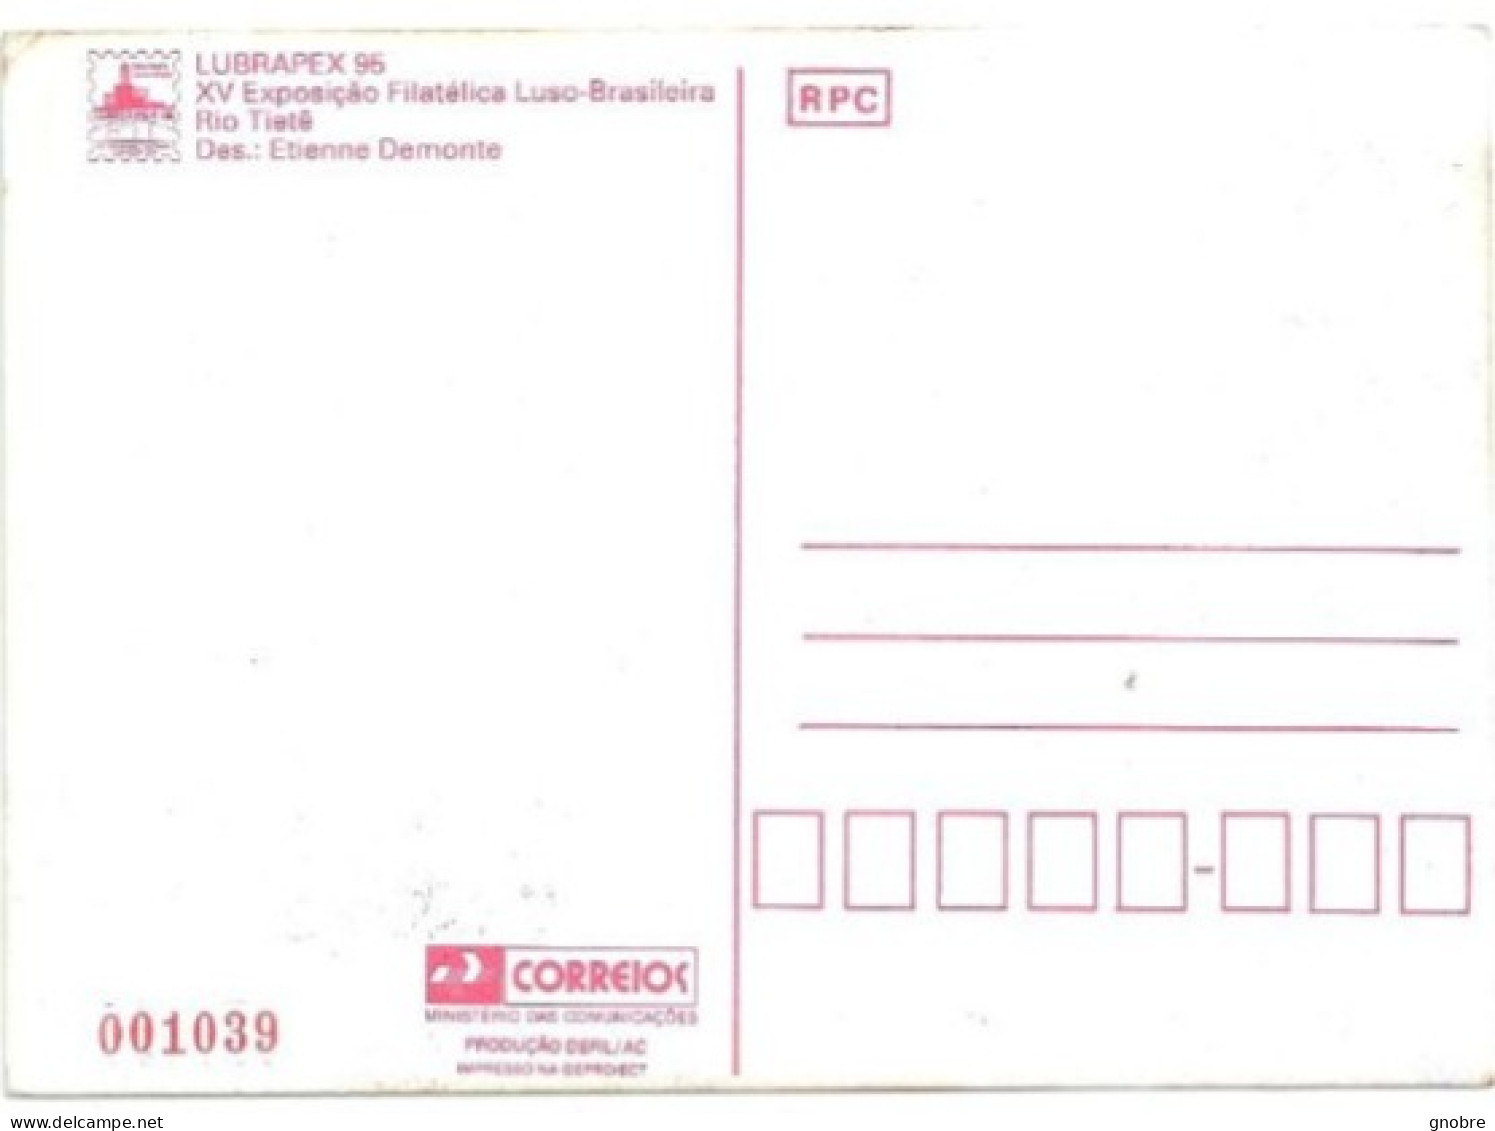 BRAZIL 1995 OFFICIAL MAXIMUM CARD MAX-203 LUBRAPEX 95 PORTUGAL RIO TIETE RIVER - Maximumkarten